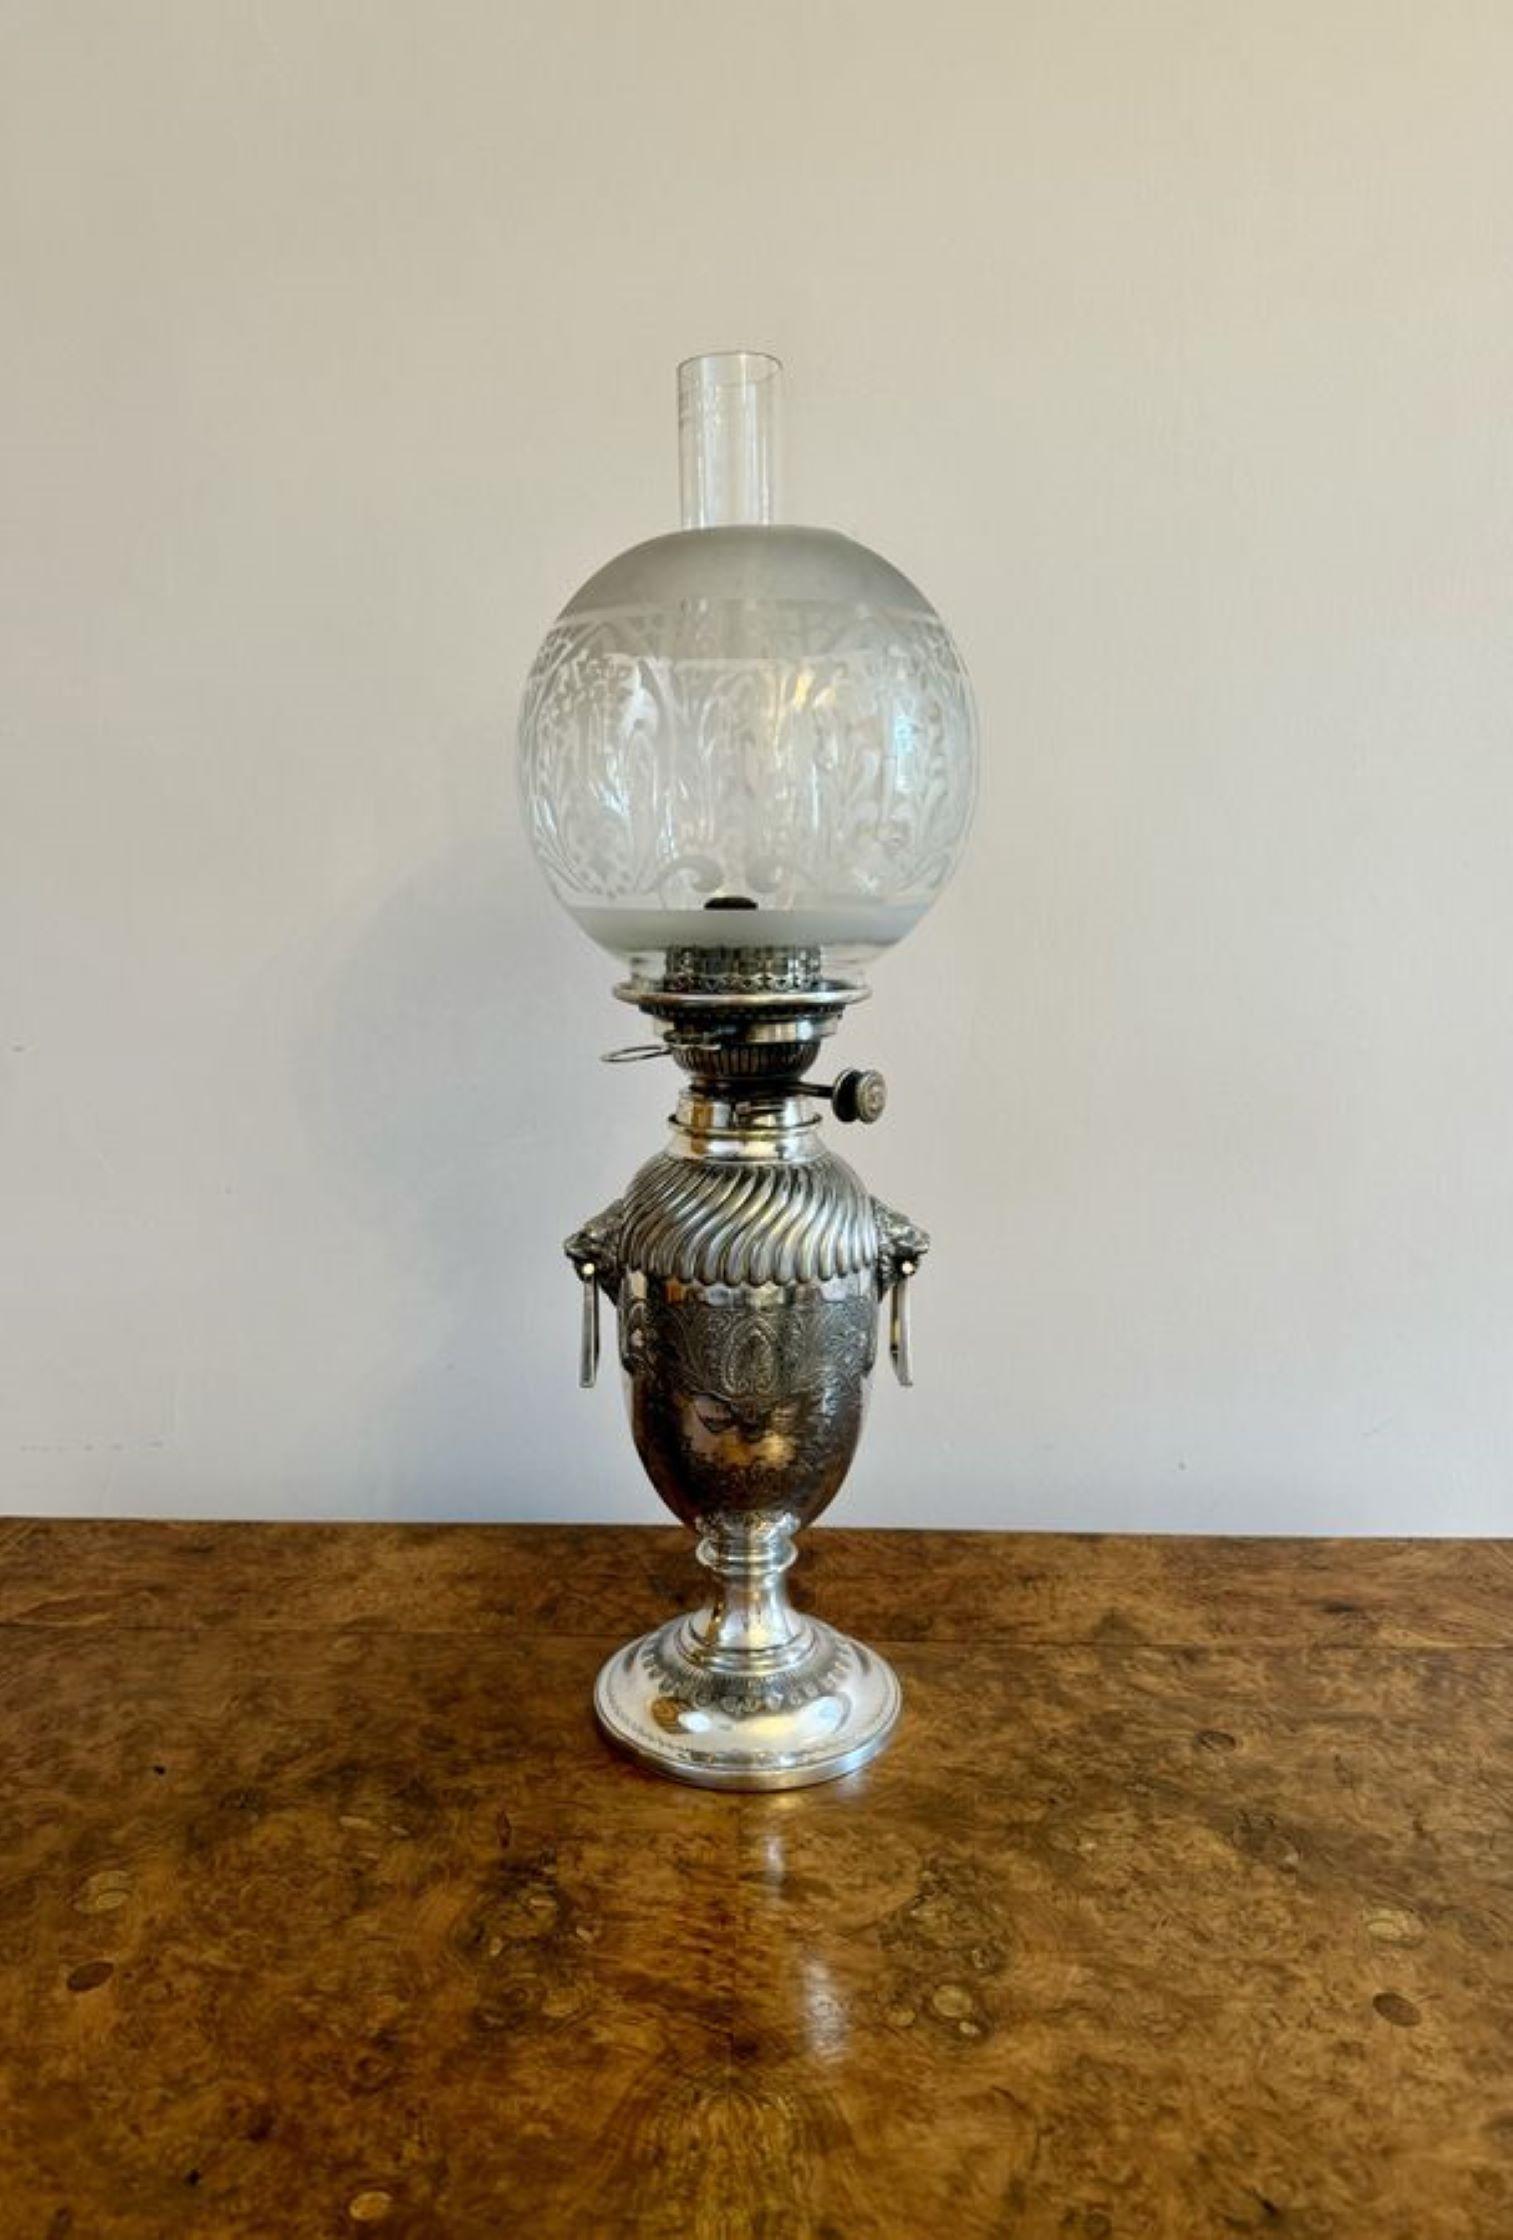 Fantastique lampe à huile victorienne en forme d'urne plaquée argent de Hinks and Sons, avec une cheminée en verre et un globe en verre gravé, avec une base en forme d'urne plaquée argent avec un sommet cannelé en spirale au-dessus d'une paire de